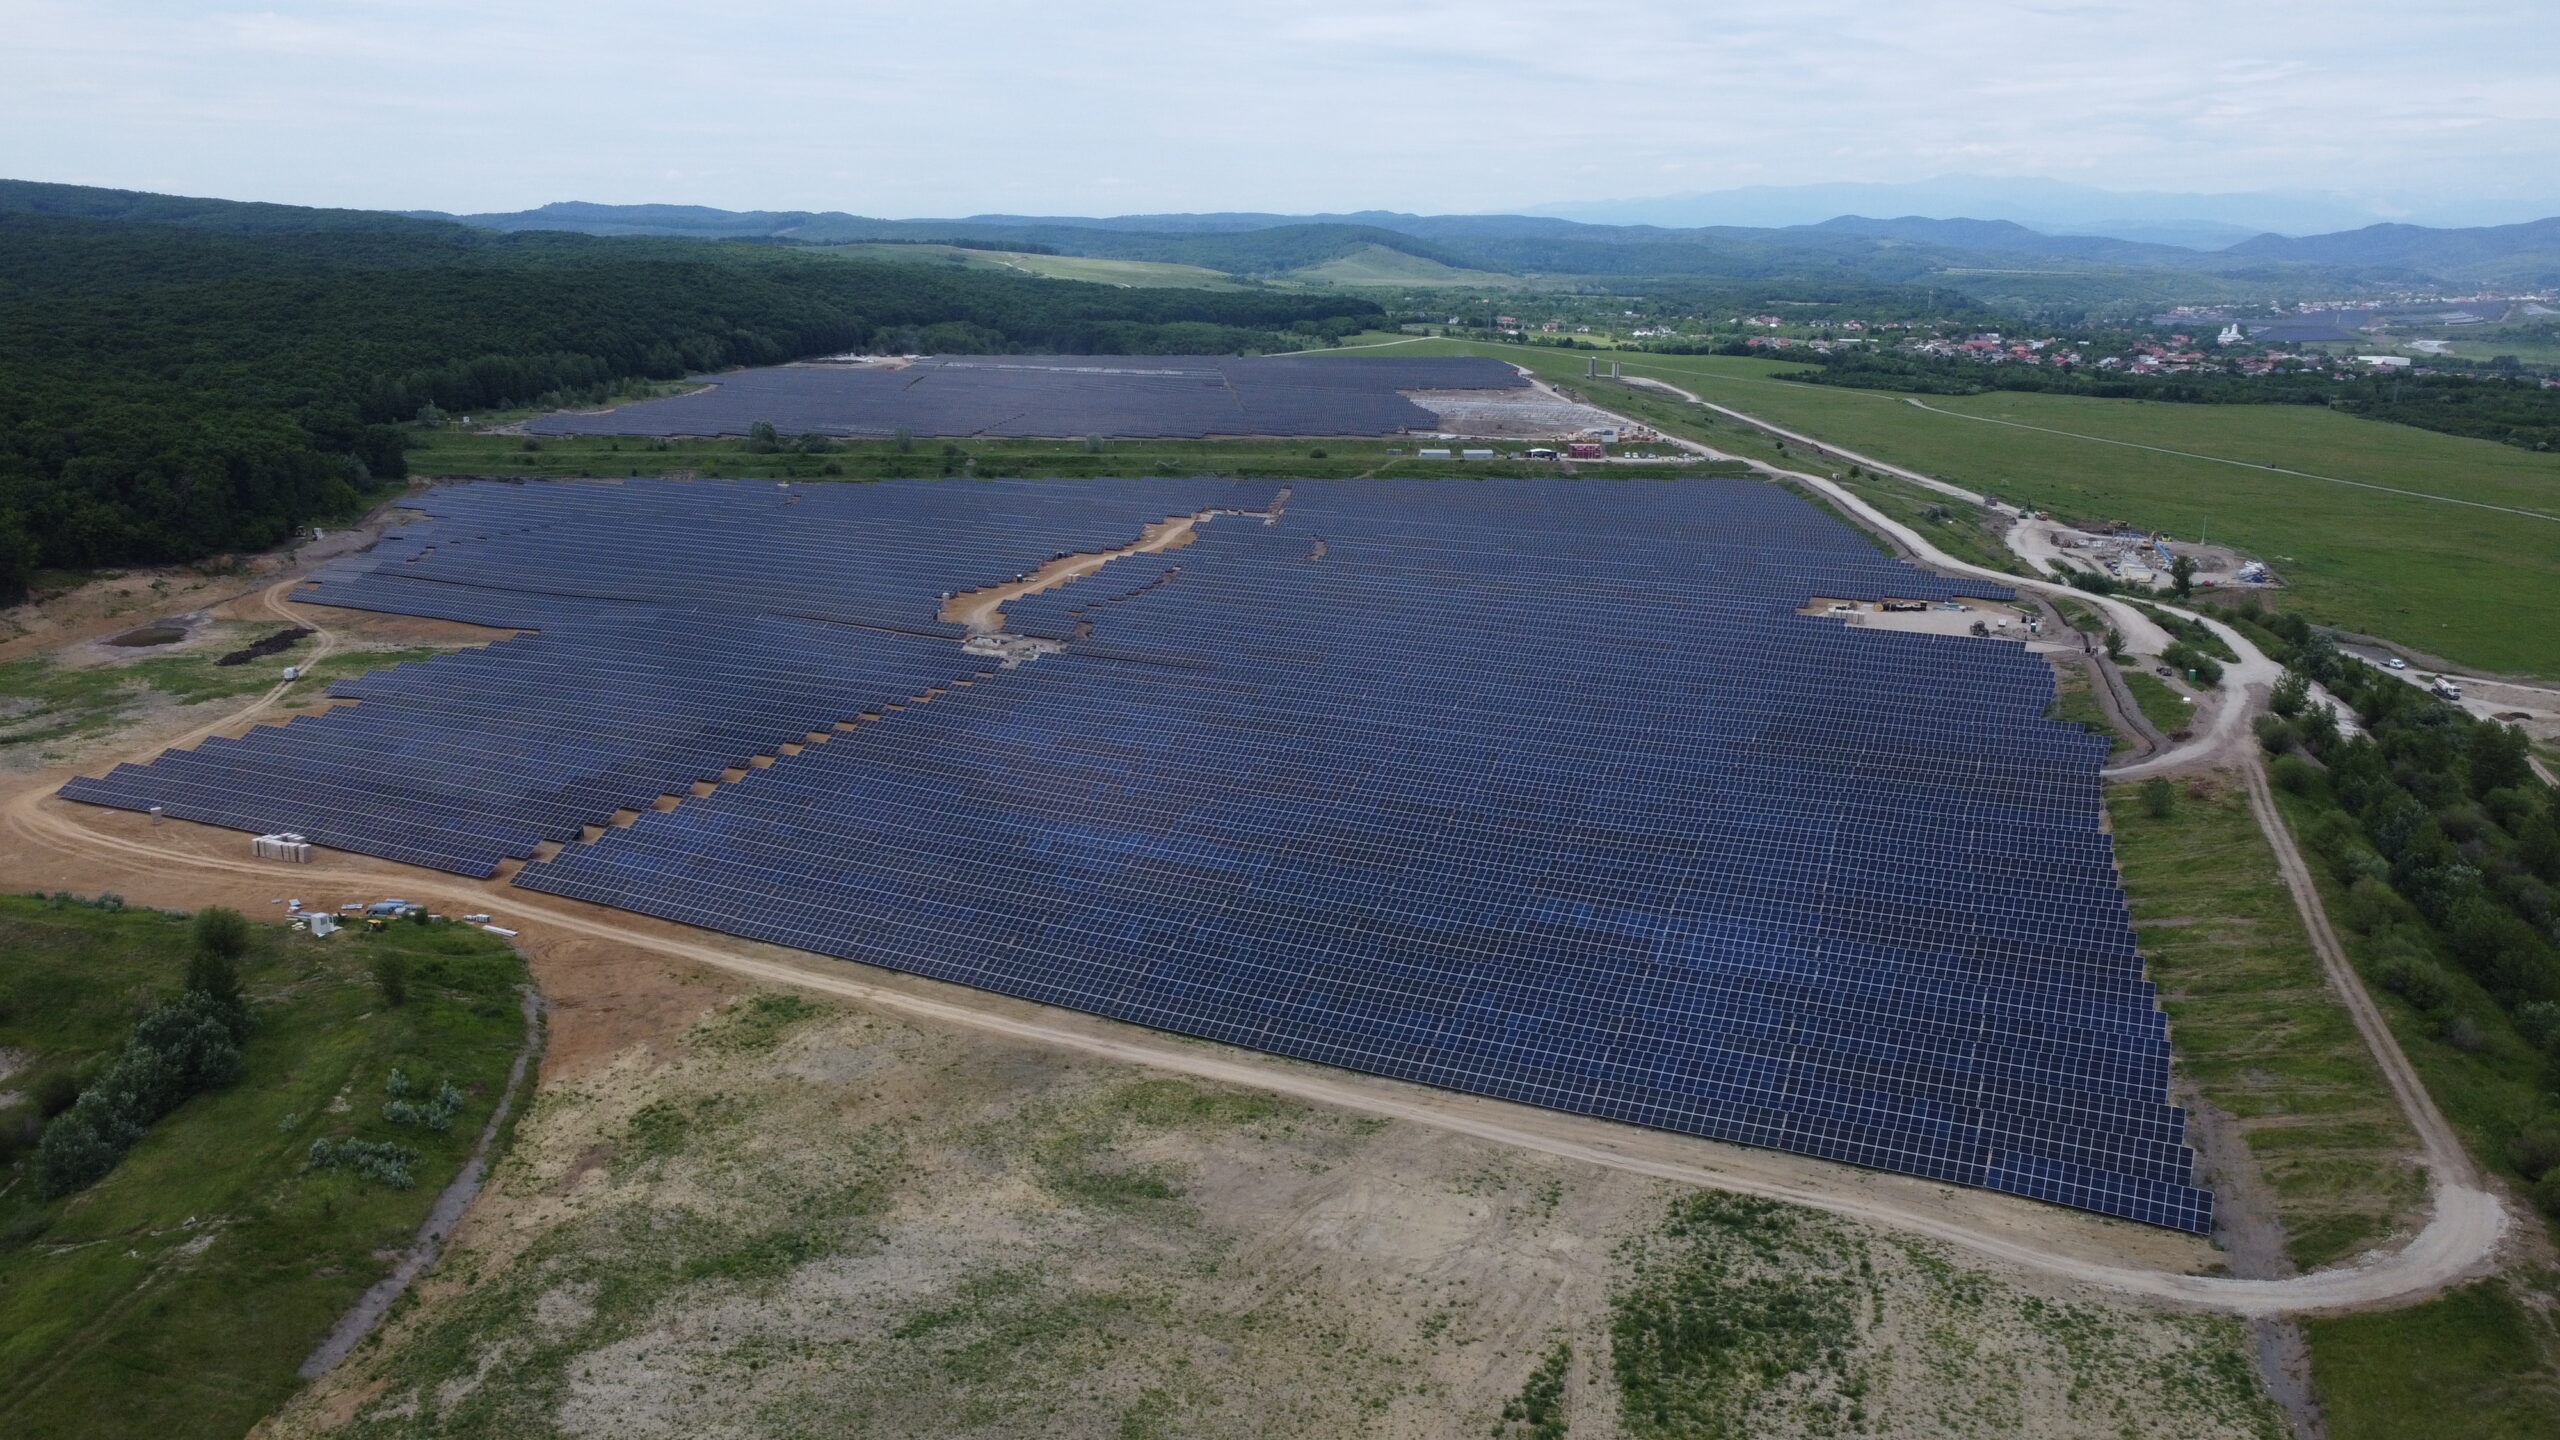 Parcul fotovoltaic Doicești-Șotânga 80 MW a fost pus în funcțiune. Investiția face parte din Complexul Energetic Doicești, care va include Centrala SMR și Parcul Fotovoltaic Doicești